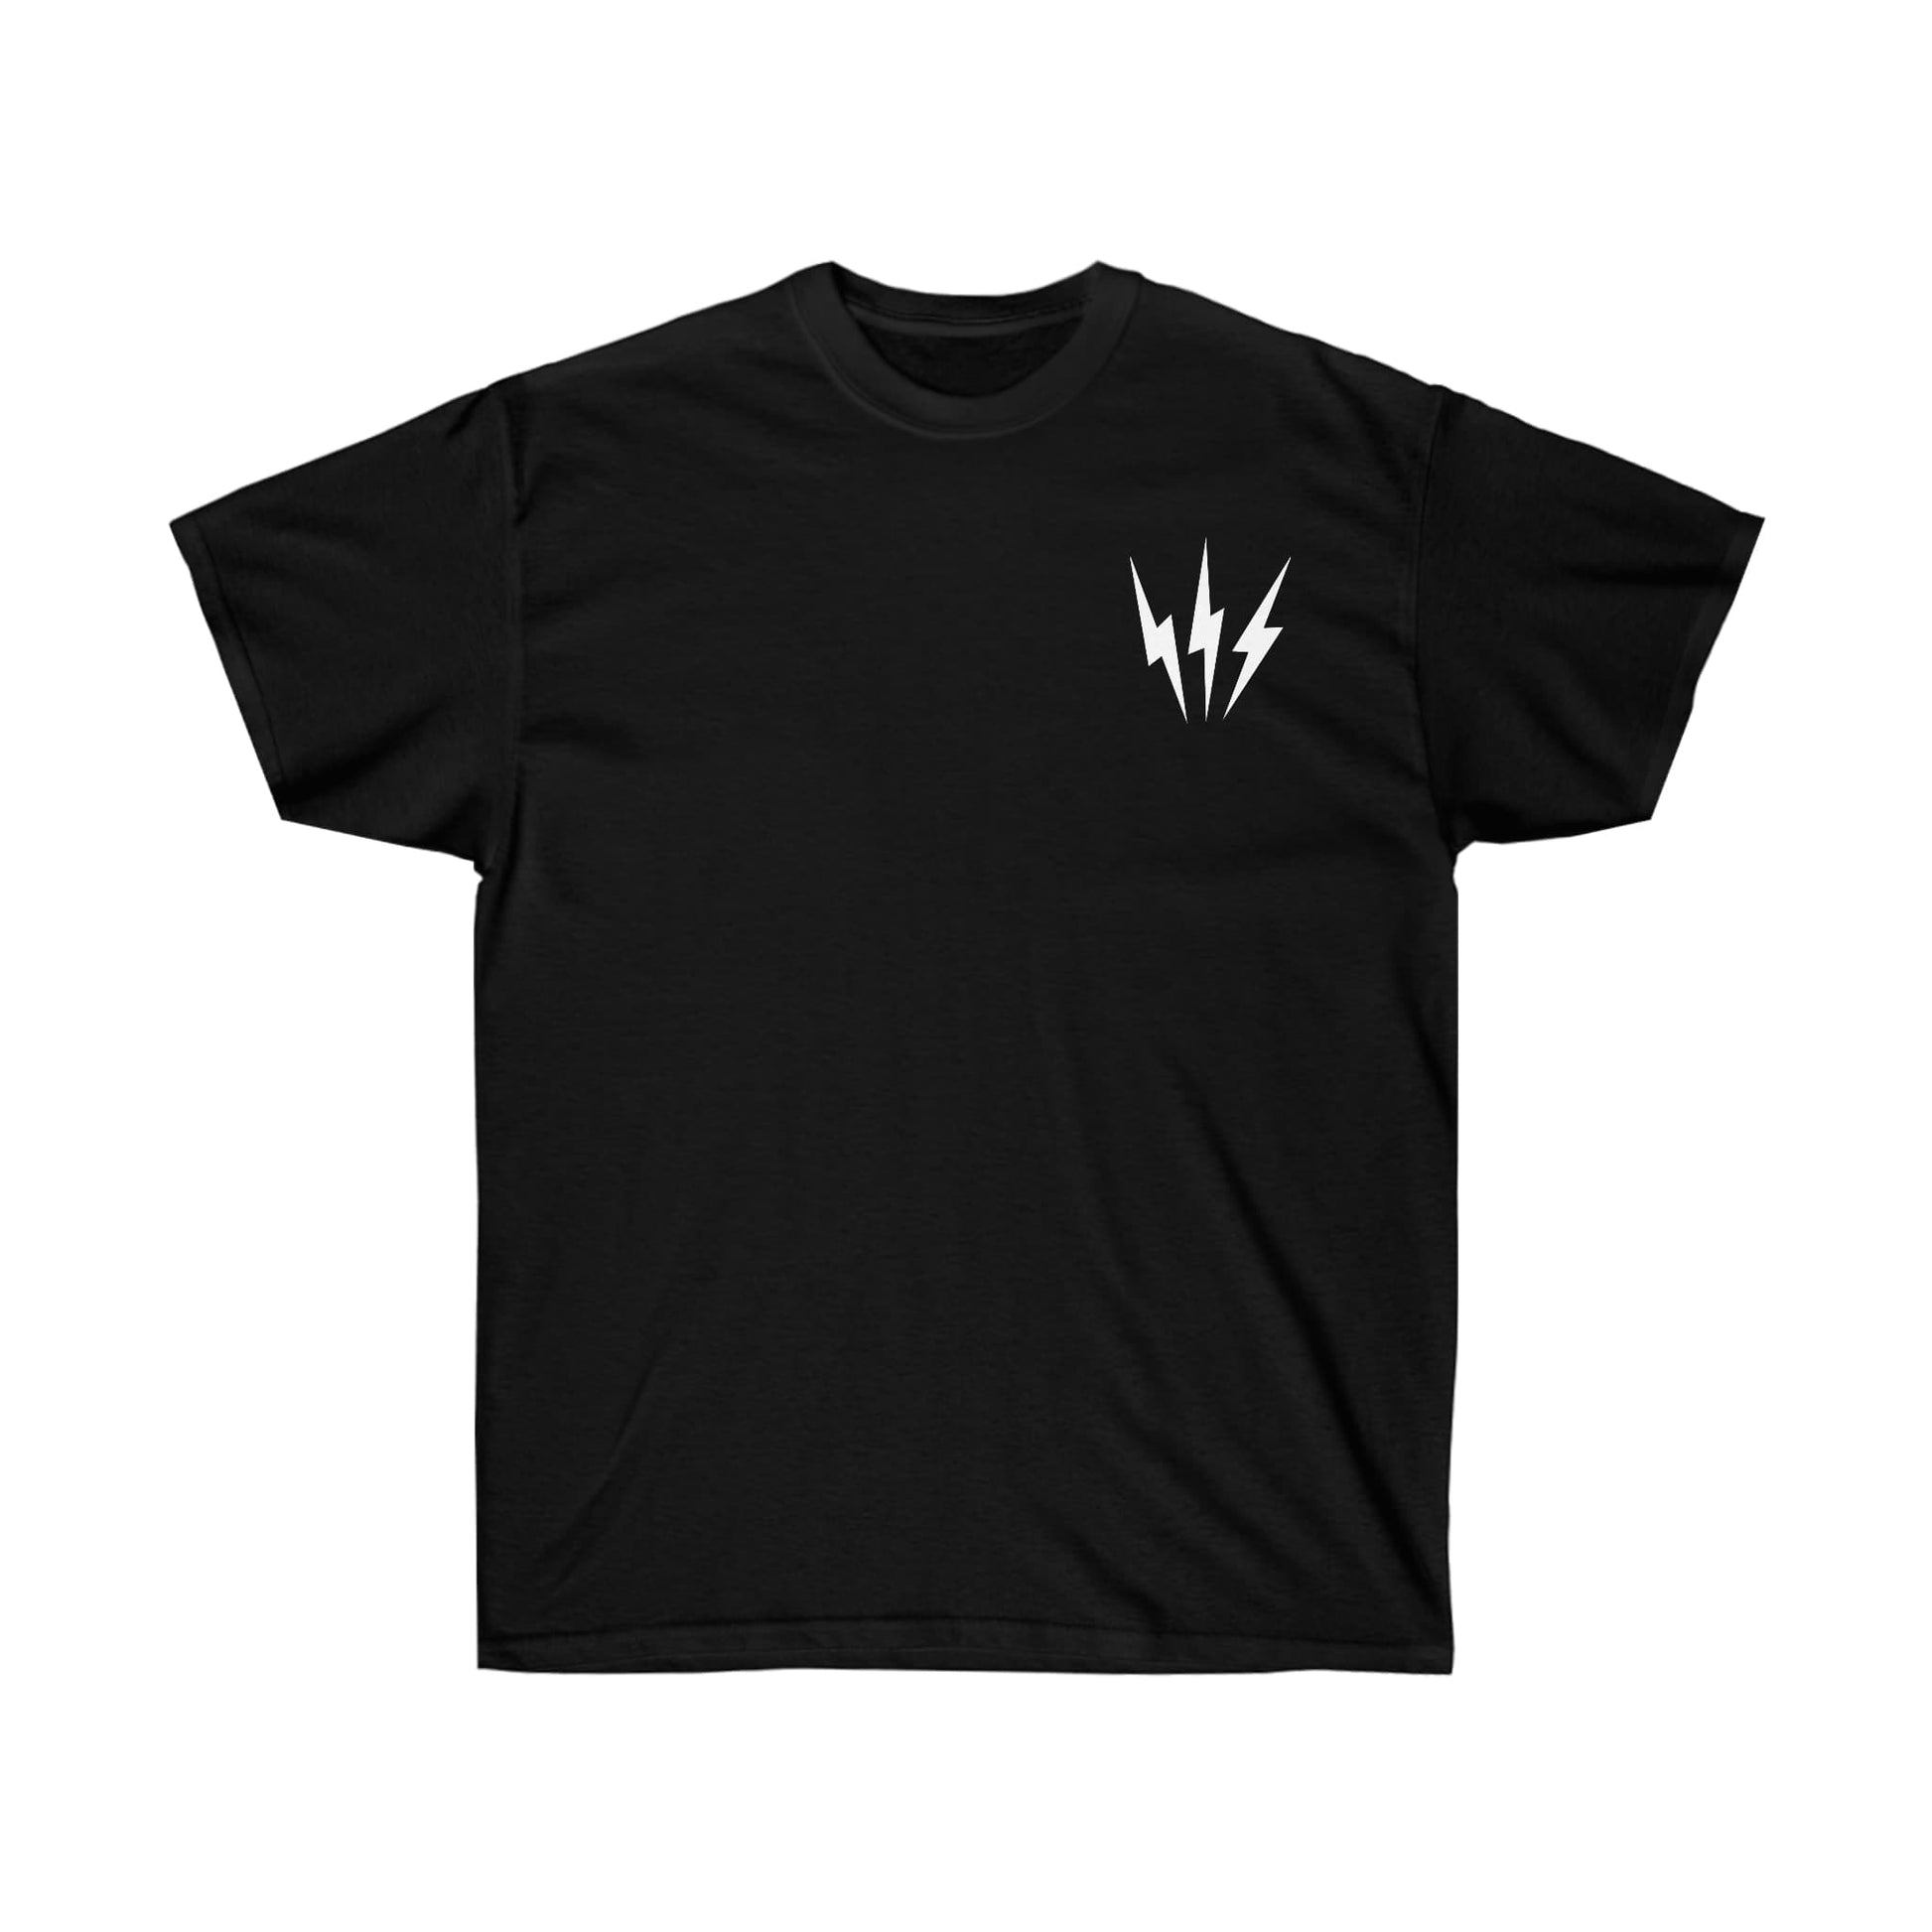 Wizard T-Shirt